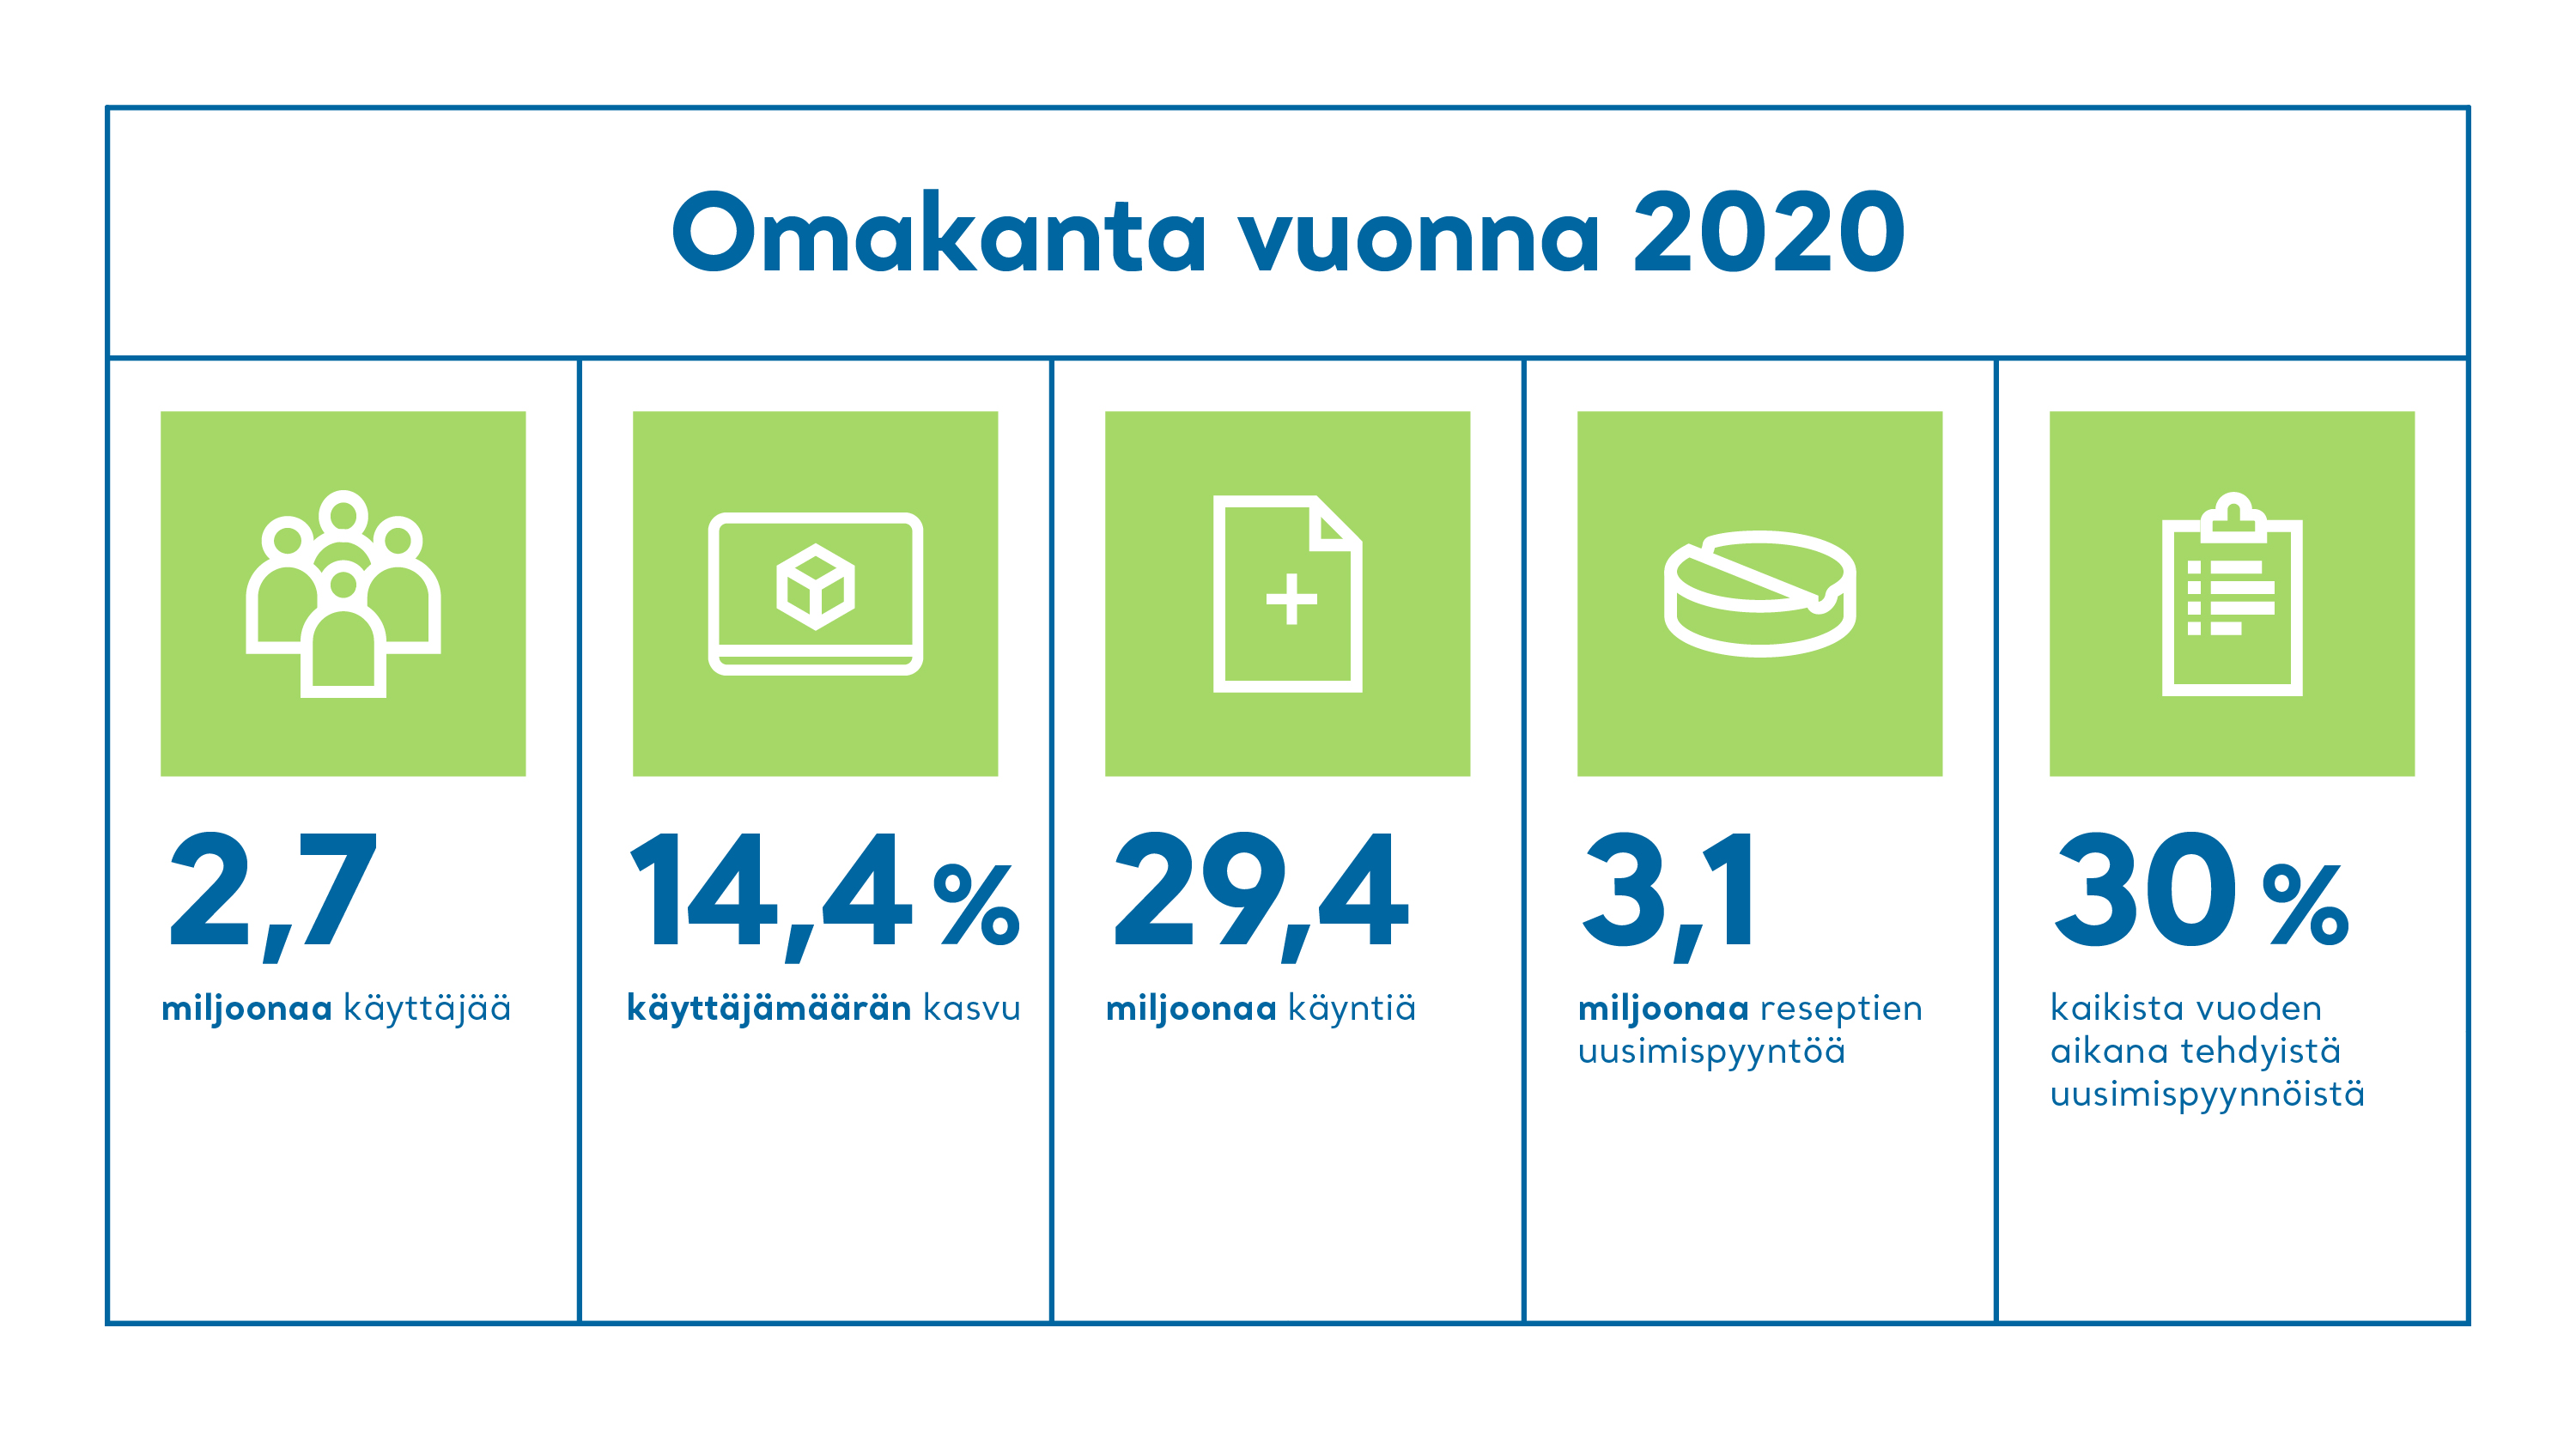 Vuonna 2020 Omakannassa oli 2,7 miljoonaa käyttäjää. Käyttäjien kasvu edelliseen vuoteen oli 14,4 %.  Vuonna 2020 Omakannassa oli 29,4 miljoonaa käyntiä. Vuonna 2020 Omakannassa oli 3,1 miljoonaa reseptin uusimispyyntöä. Tämä oli 30 % kaikista vuoden aikana tehdyistä uusimispyynnöistä. 